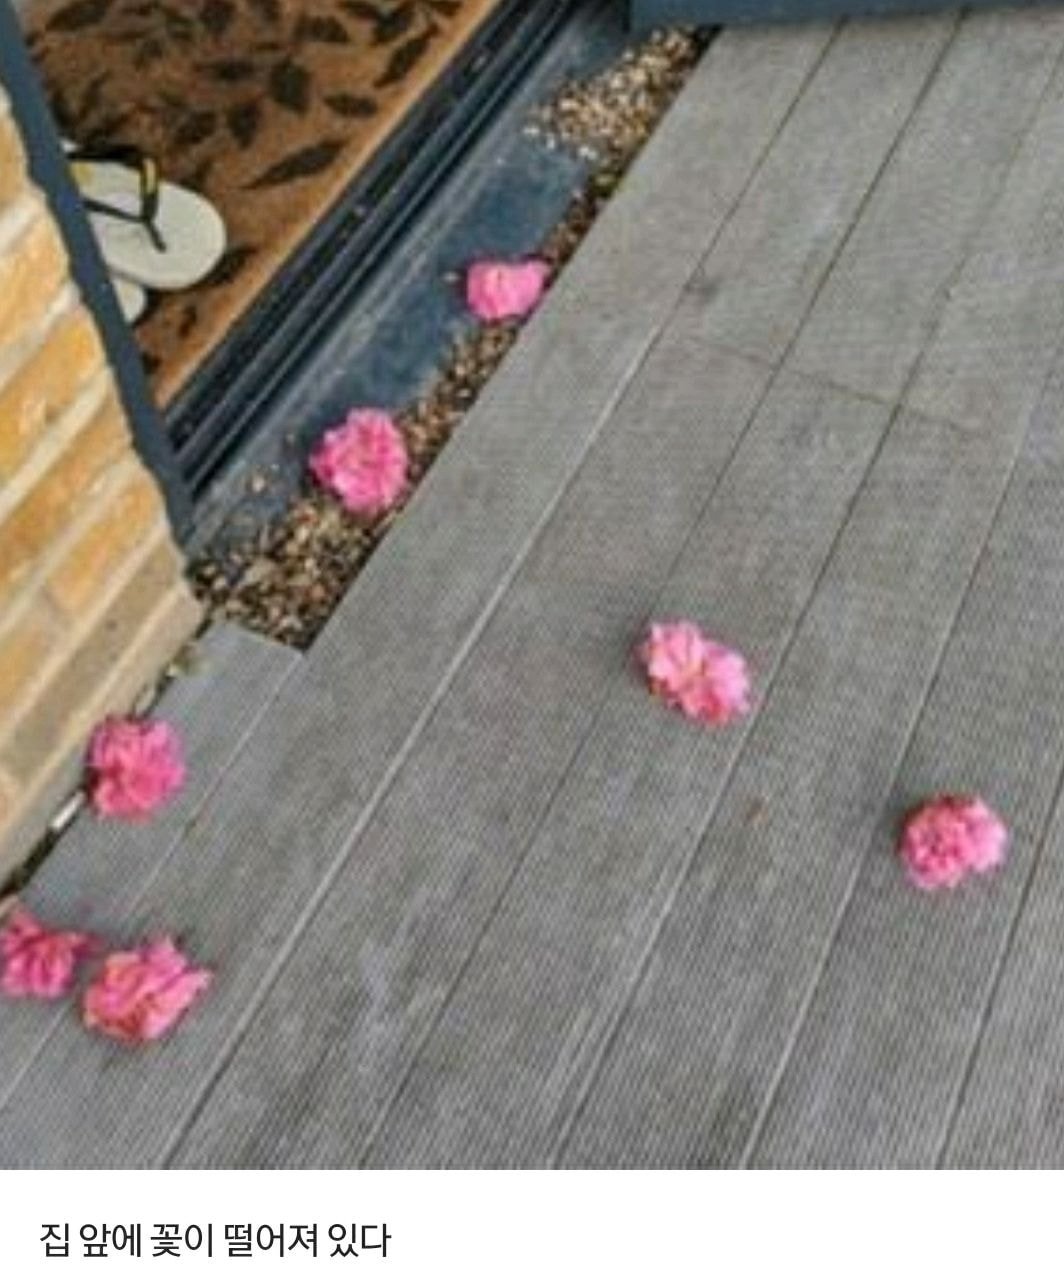 매일 집 현관에 분홍색 꽃이 떨어져 있던 이유.jpg